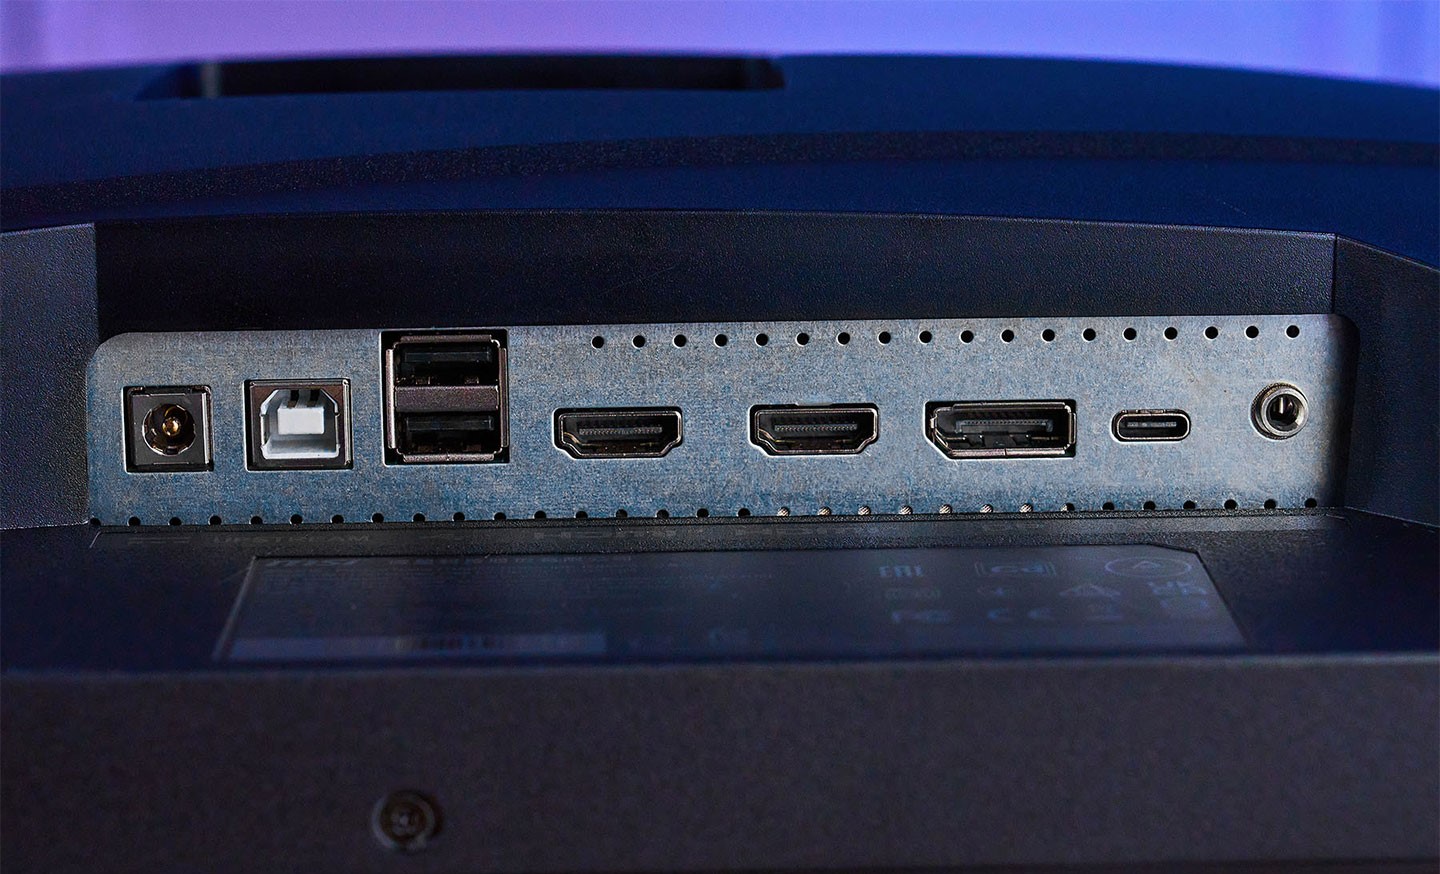 連結埠集於機身後側，其兩組 HDMI 2.1 埠提供了「滿血版」的傳輸速度，無論是高階顯卡或是次世代遊戲主機都能完美支援，其他包括 DisplayPort 1.4a 與 USB Type C 也都有提供，其 Type C 可同時支援 4K 144Hz 的輸出能力，以及 65W PD 快速充電的能力；另外顯示器也提供了 USB Type B 可串連電腦，並能透過兩組 USB A 連結鍵盤、滑鼠，並使用 KVM 功能，同時操控多個連結至顯示器的備。